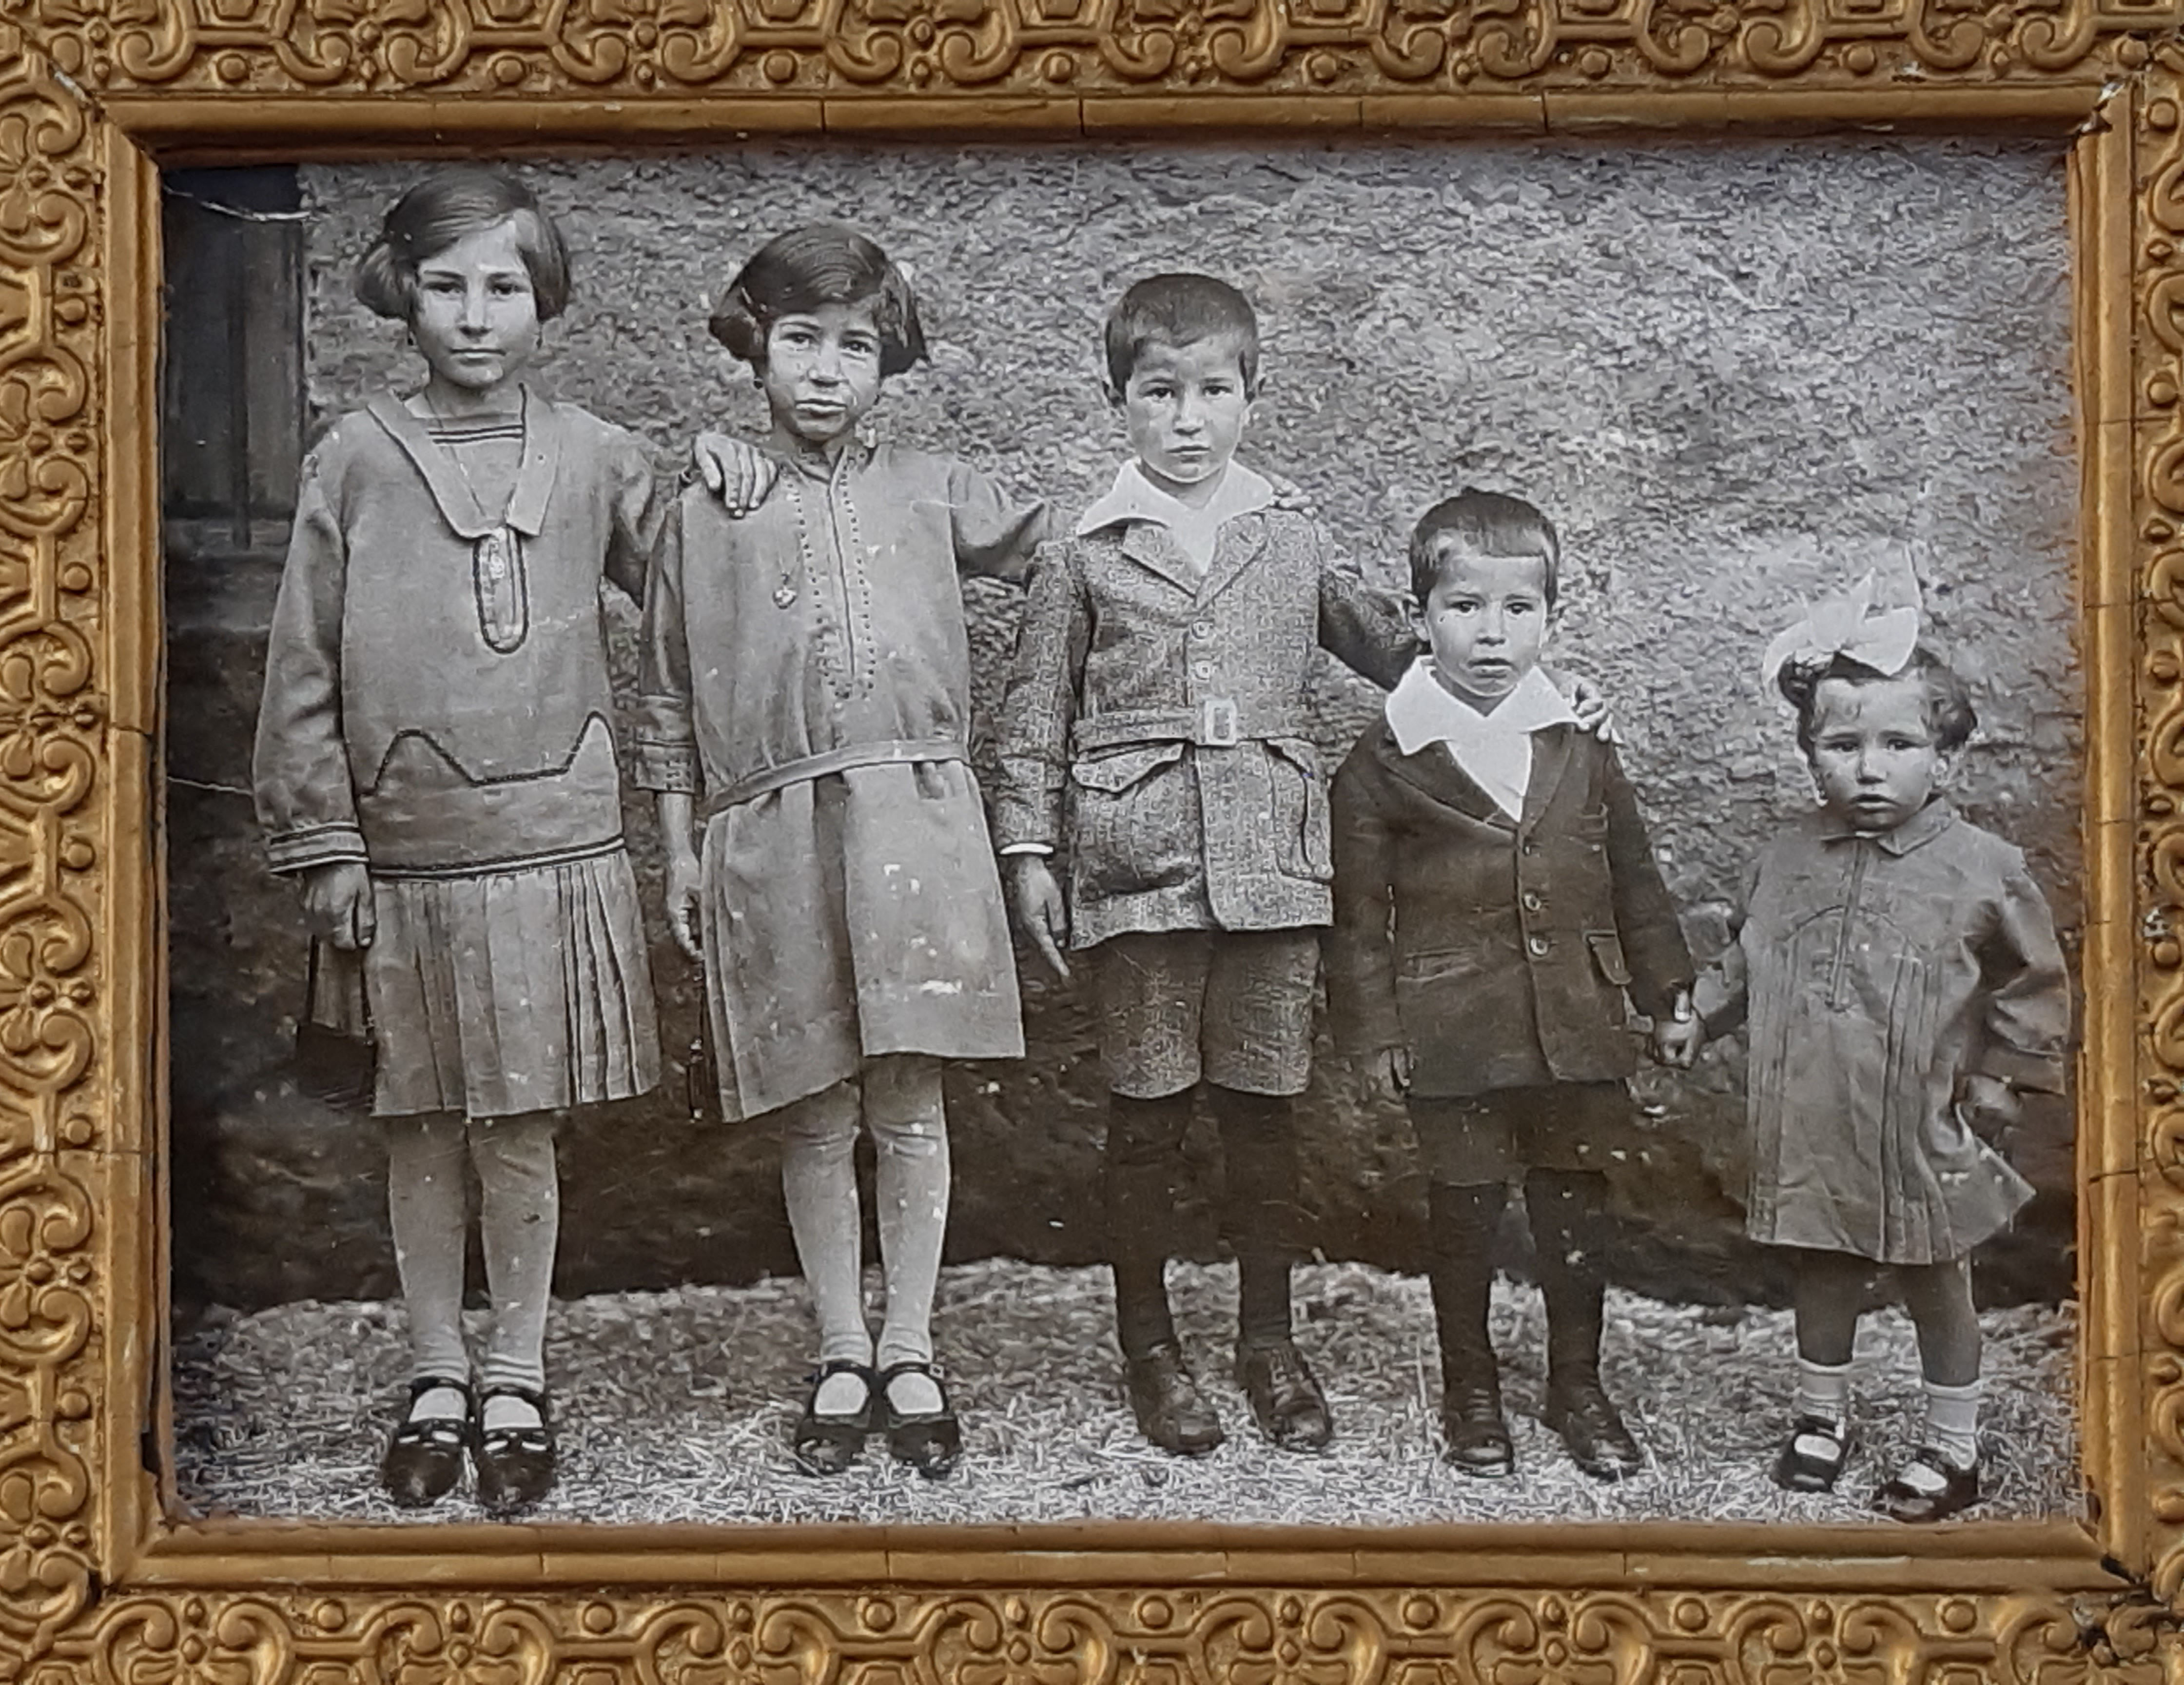 Josefina y hermanos que la siguen en edad (De izquierda a derecha: Josefina, Hilaria, Jesús, Felipe y Ángela)